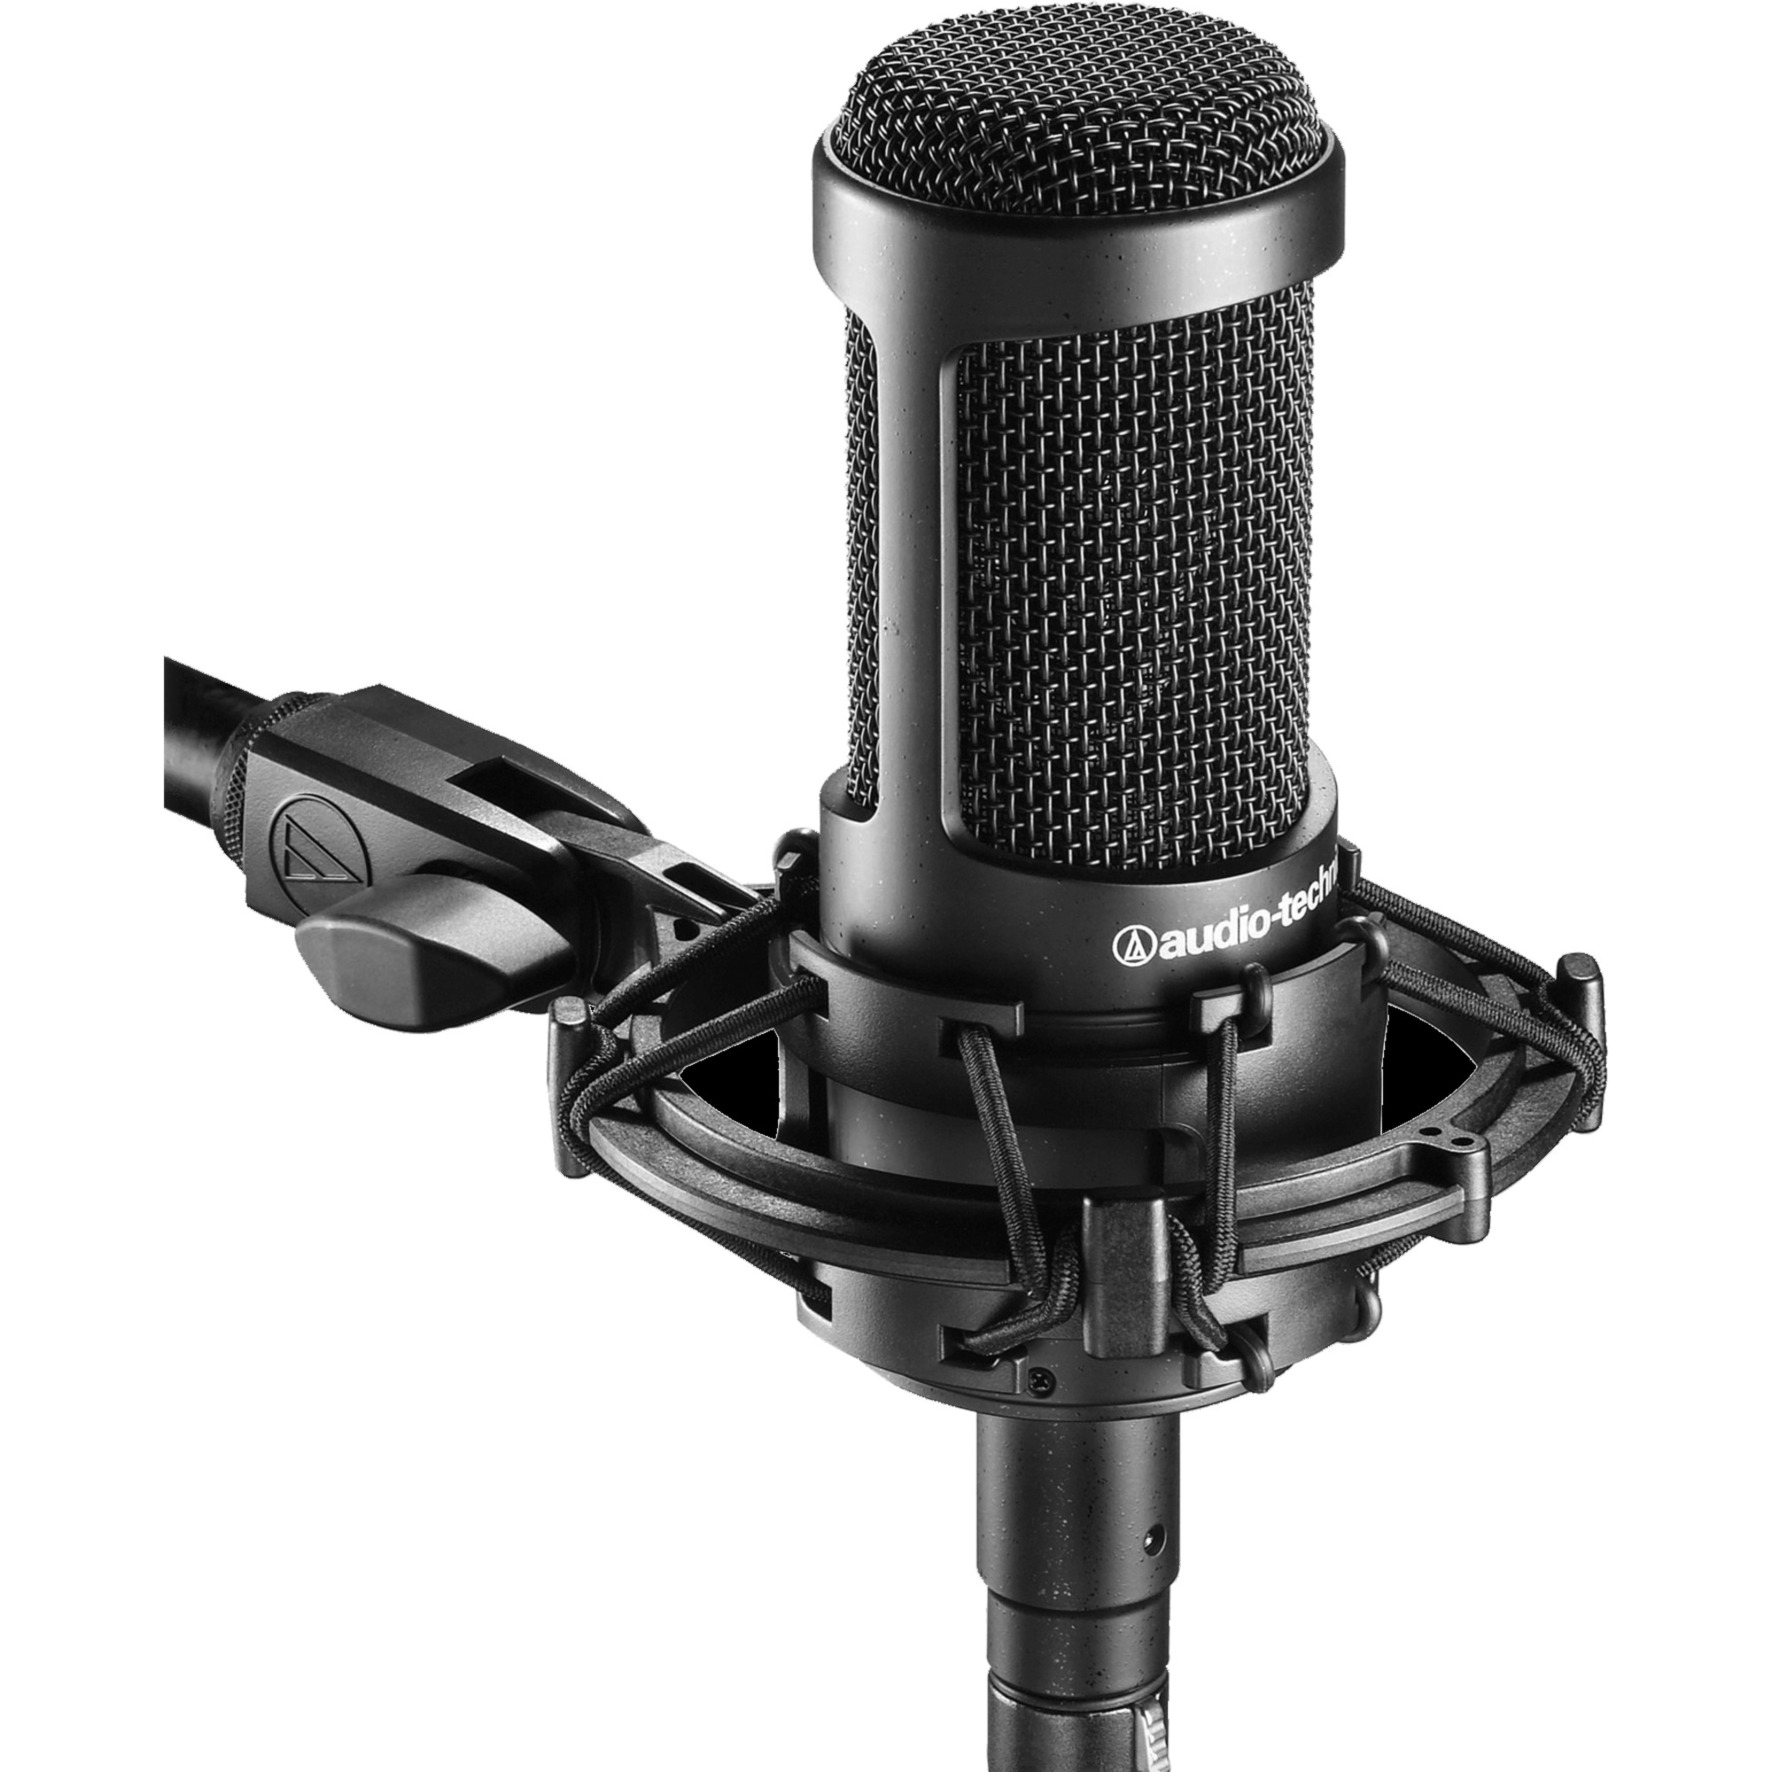 Image of Alternate - AT2035, Mikrofon online einkaufen bei Alternate